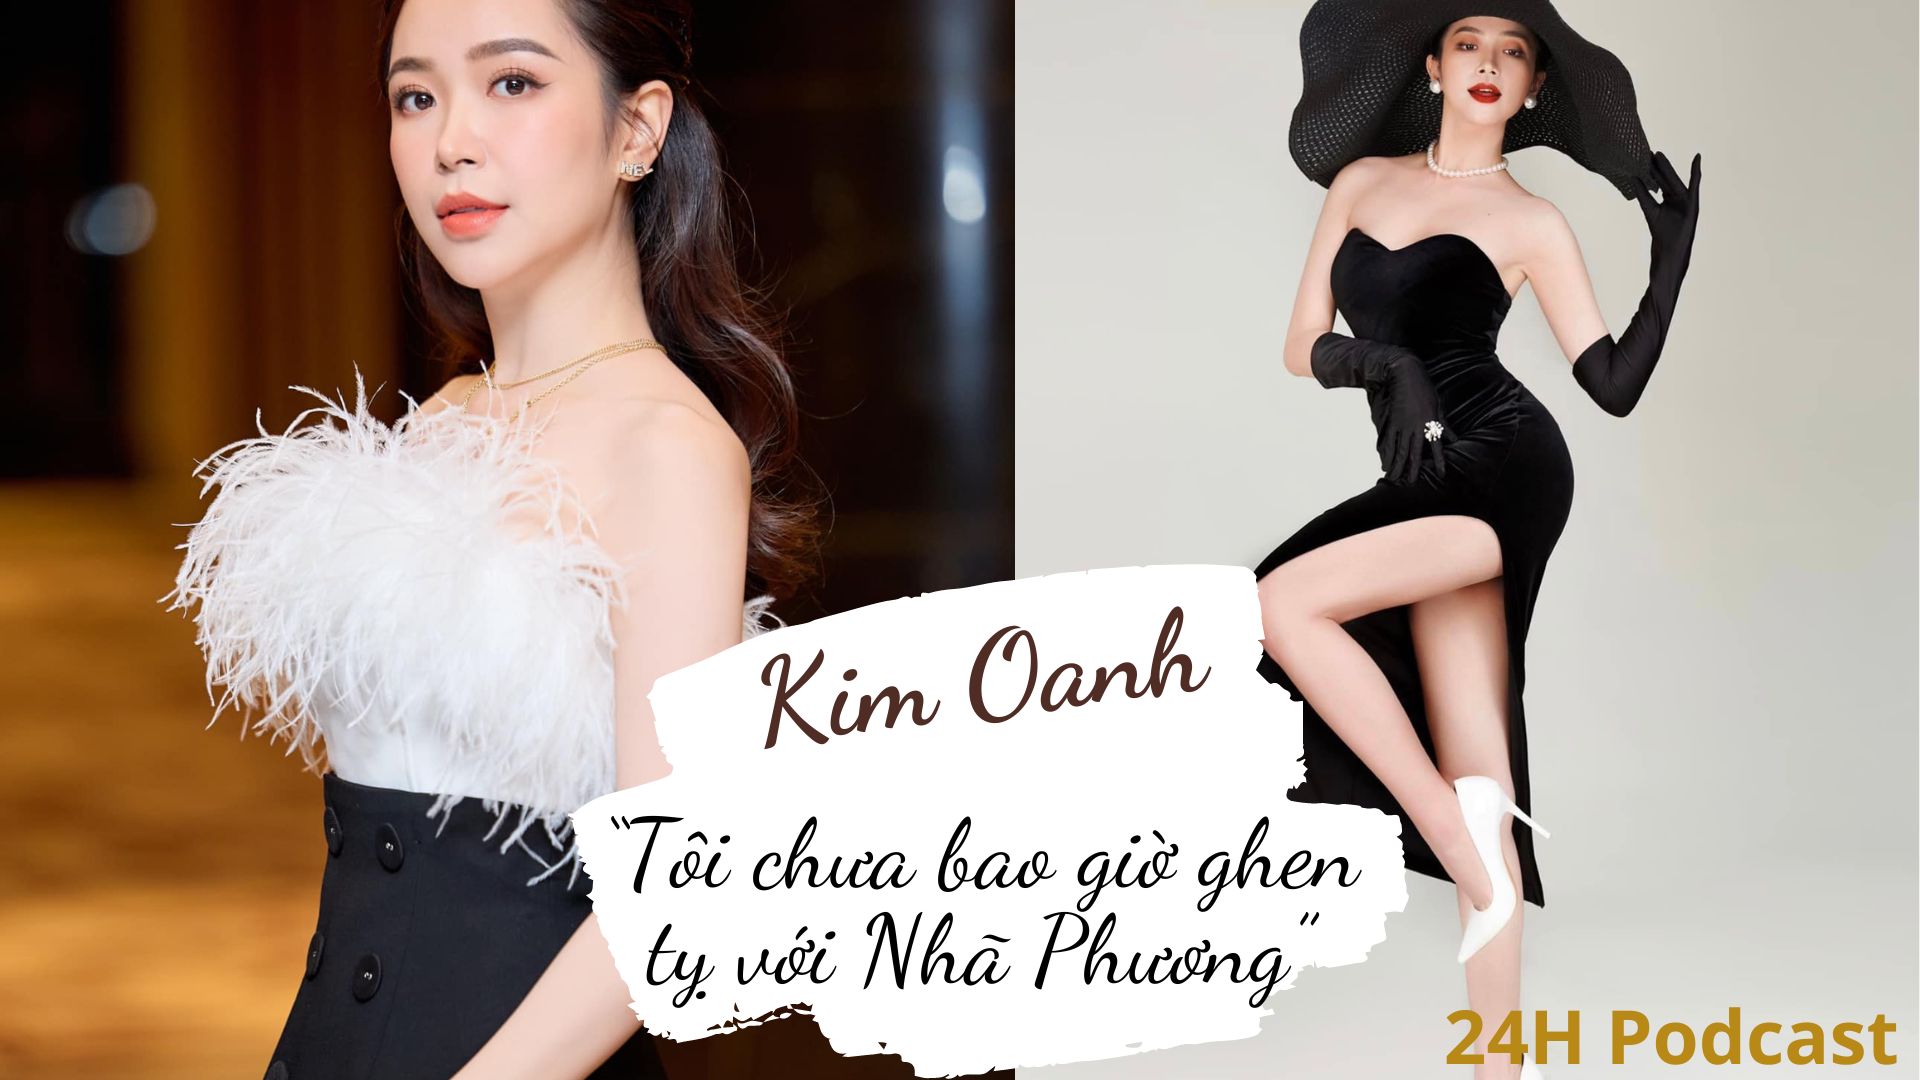 [Podcast] Kim Oanh: “Tôi chưa bao giờ ghen tỵ với Nhã Phương” - 1